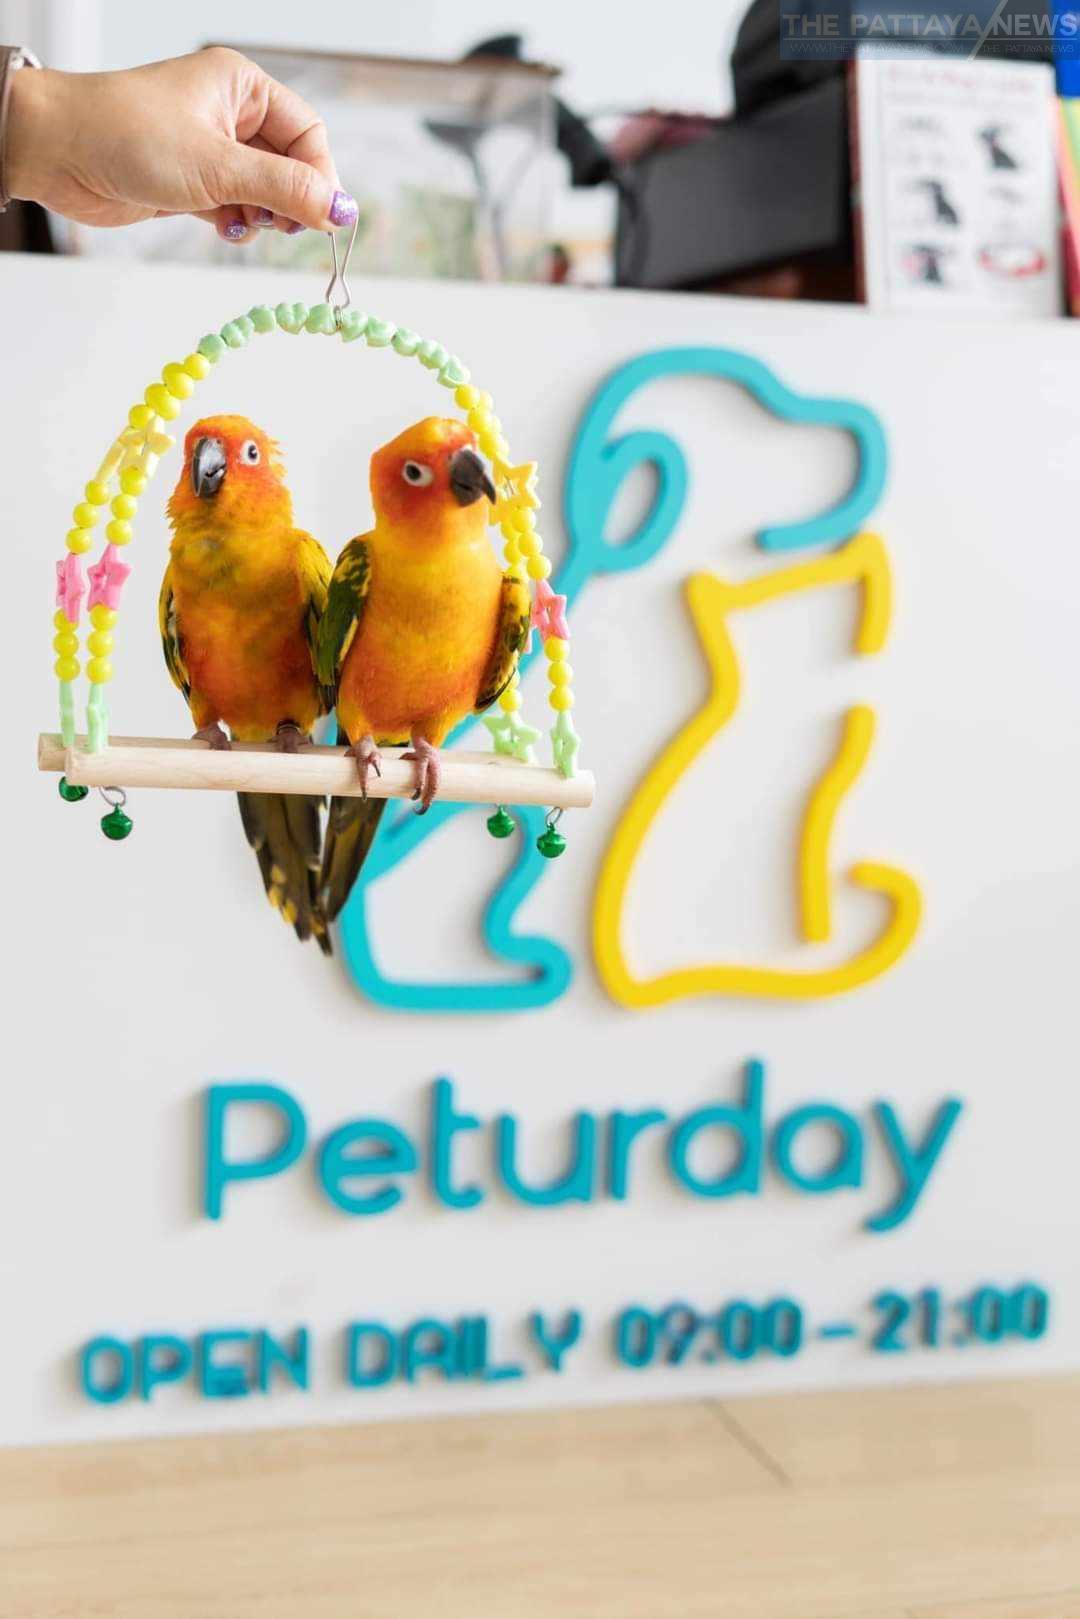 , Peturday: Elevating Pet Care in Pratumnak, Pattaya, We love Thailand